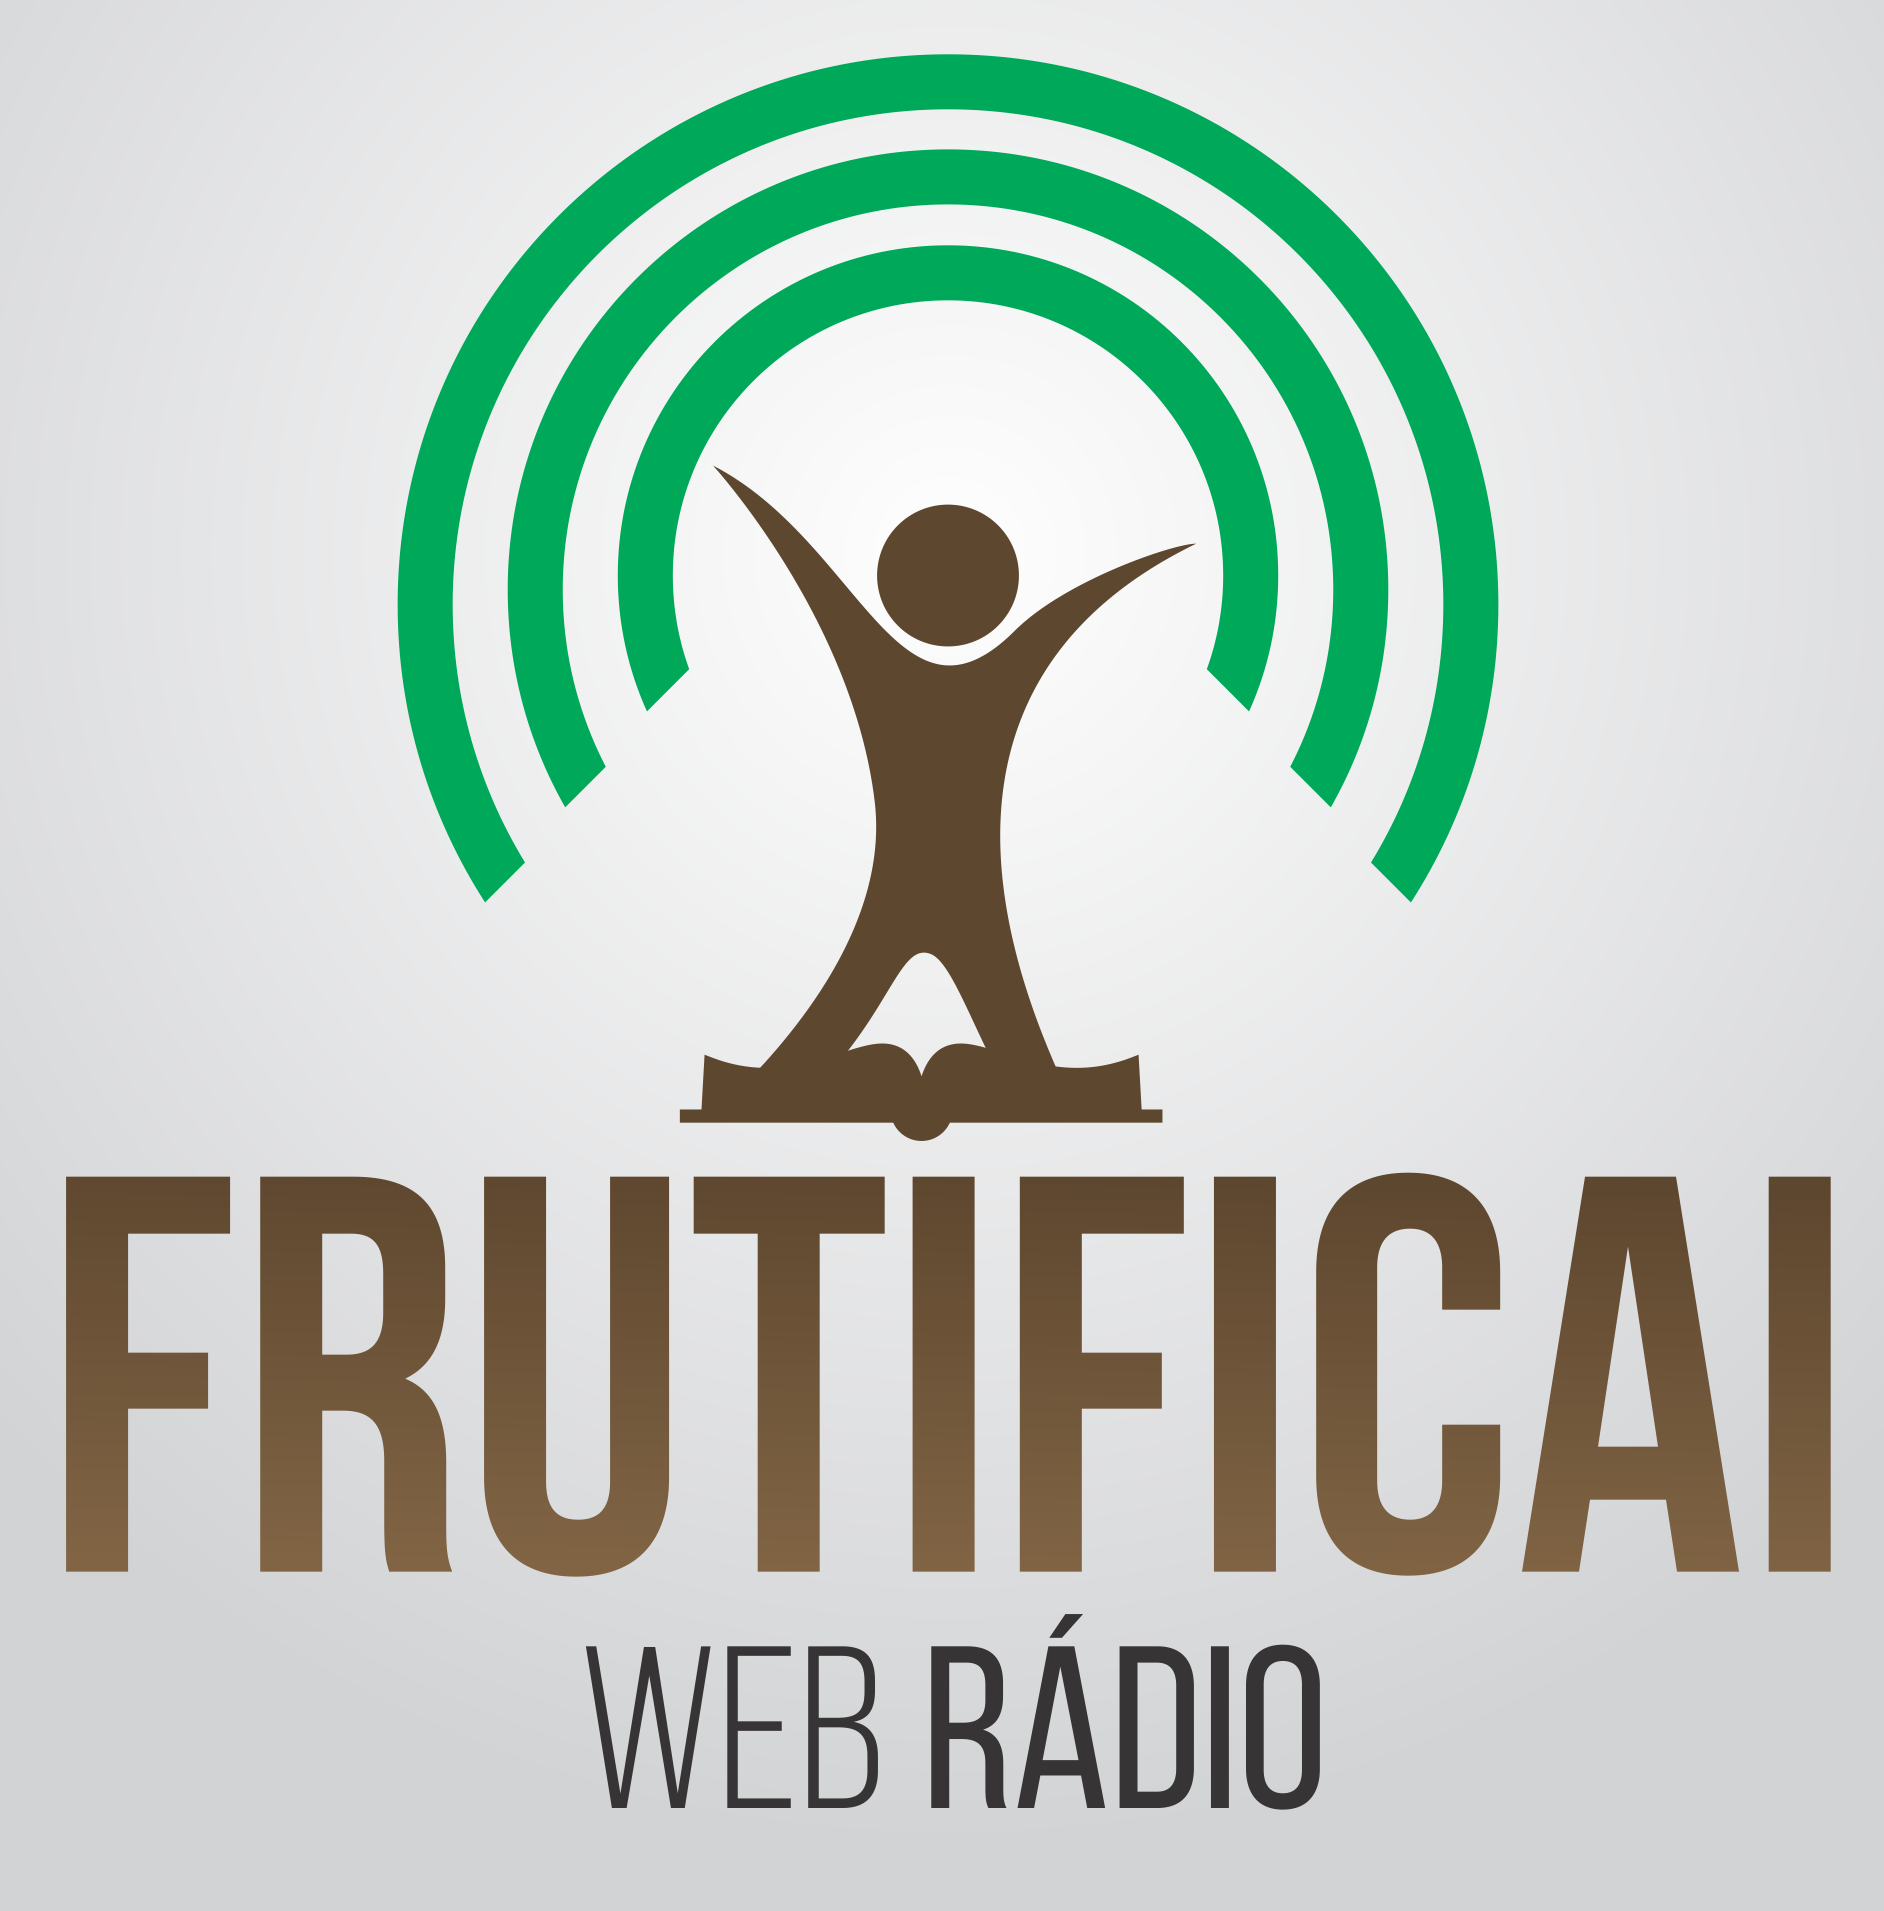 Web Rádio Frutificai é indicada ao “Troféu Gerando Salvação 2020”